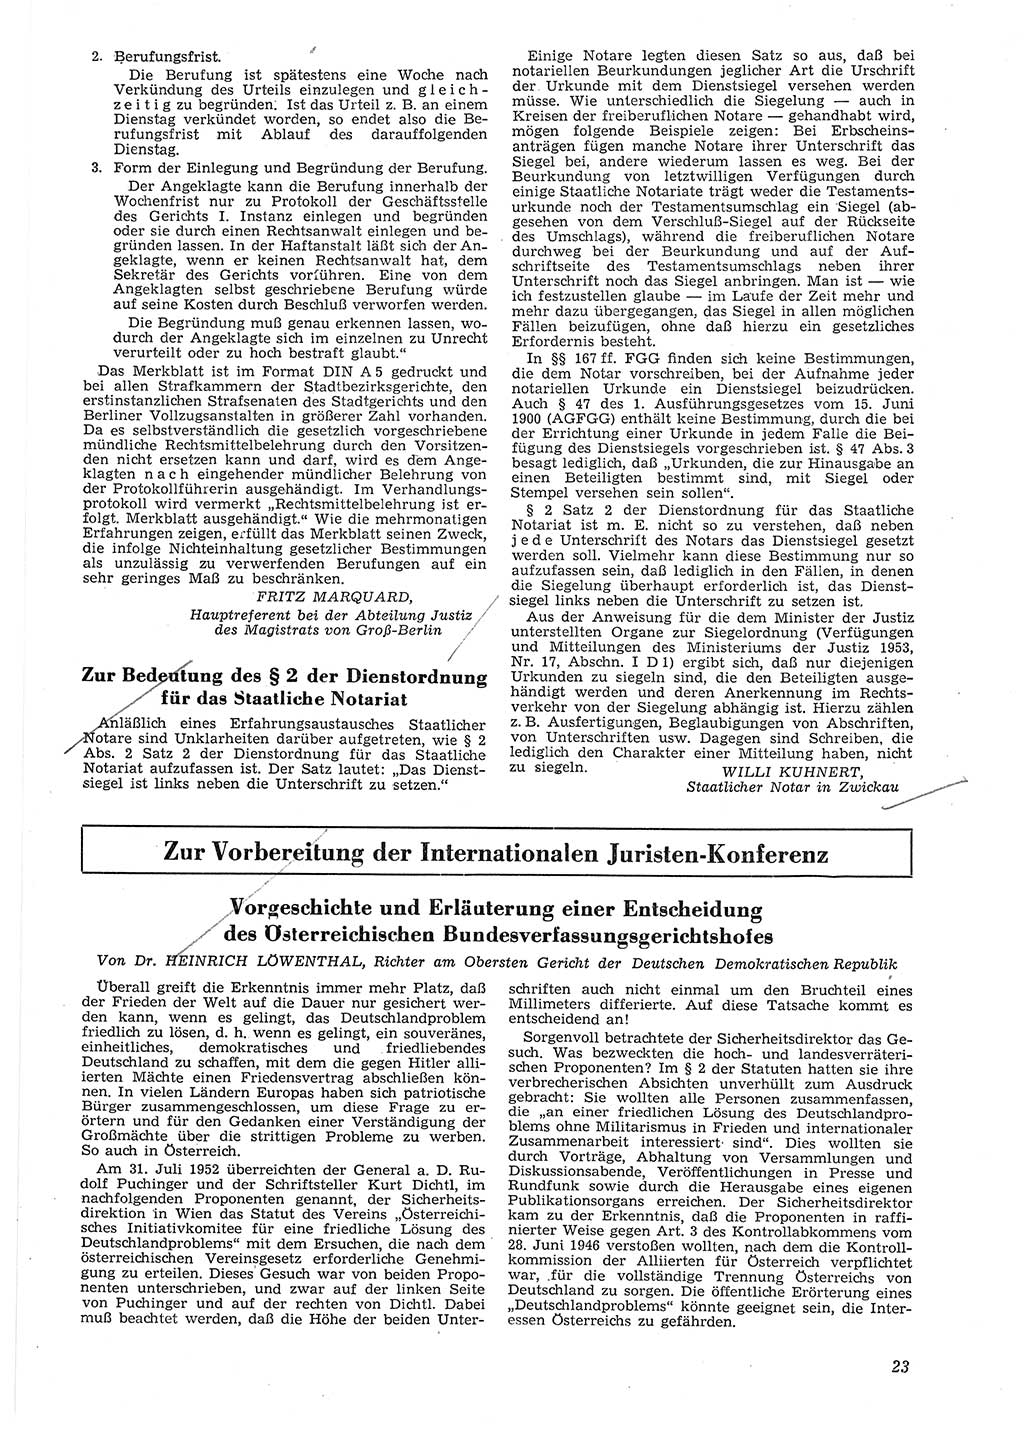 Neue Justiz (NJ), Zeitschrift für Recht und Rechtswissenschaft [Deutsche Demokratische Republik (DDR)], 8. Jahrgang 1954, Seite 23 (NJ DDR 1954, S. 23)